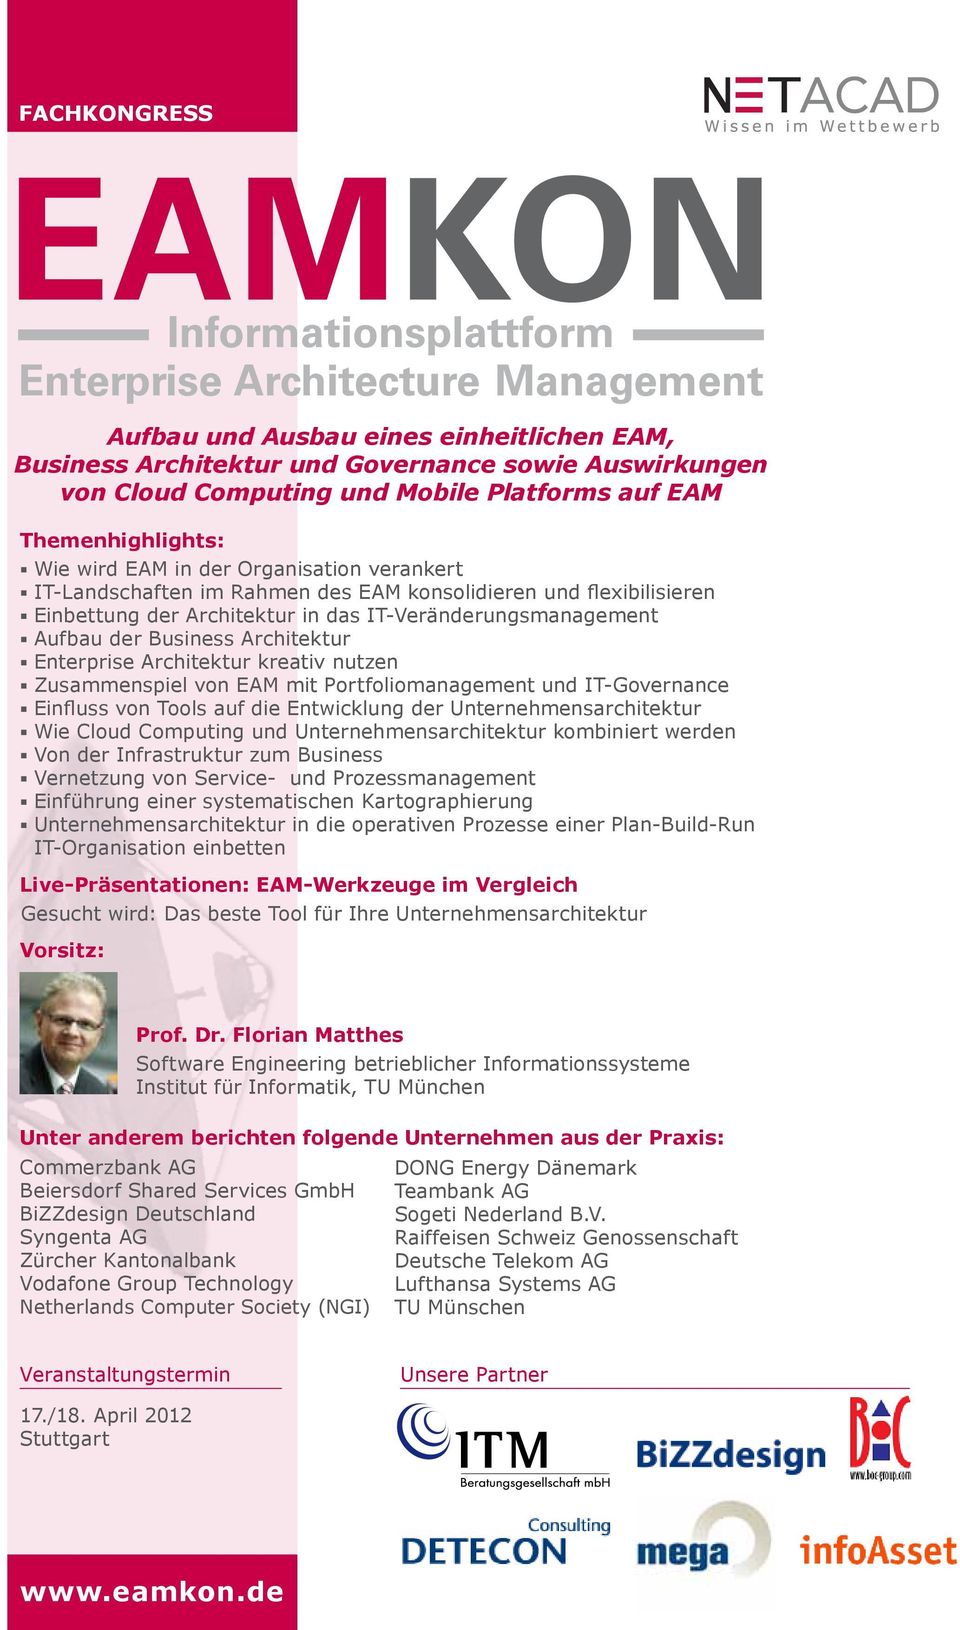 Architektur kreativ nutzen Zusammenspiel von EAM mit Portfoliomanagement und IT-Governance Einfluss von Tools auf die Entwicklung der Unternehmensarchitektur Wie Cloud Computing und